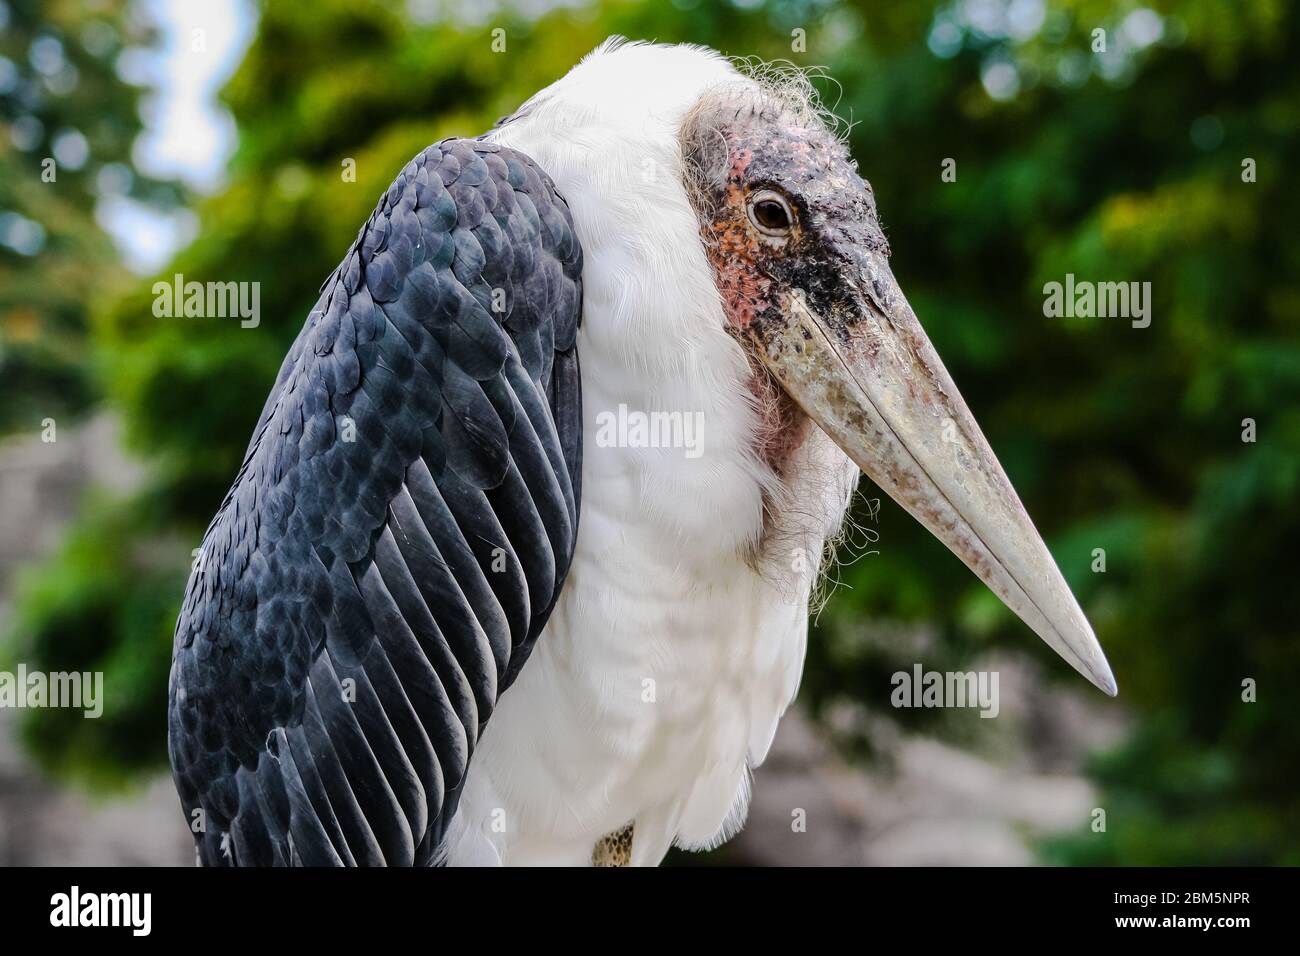 The head of a marabou bird Stock Photo